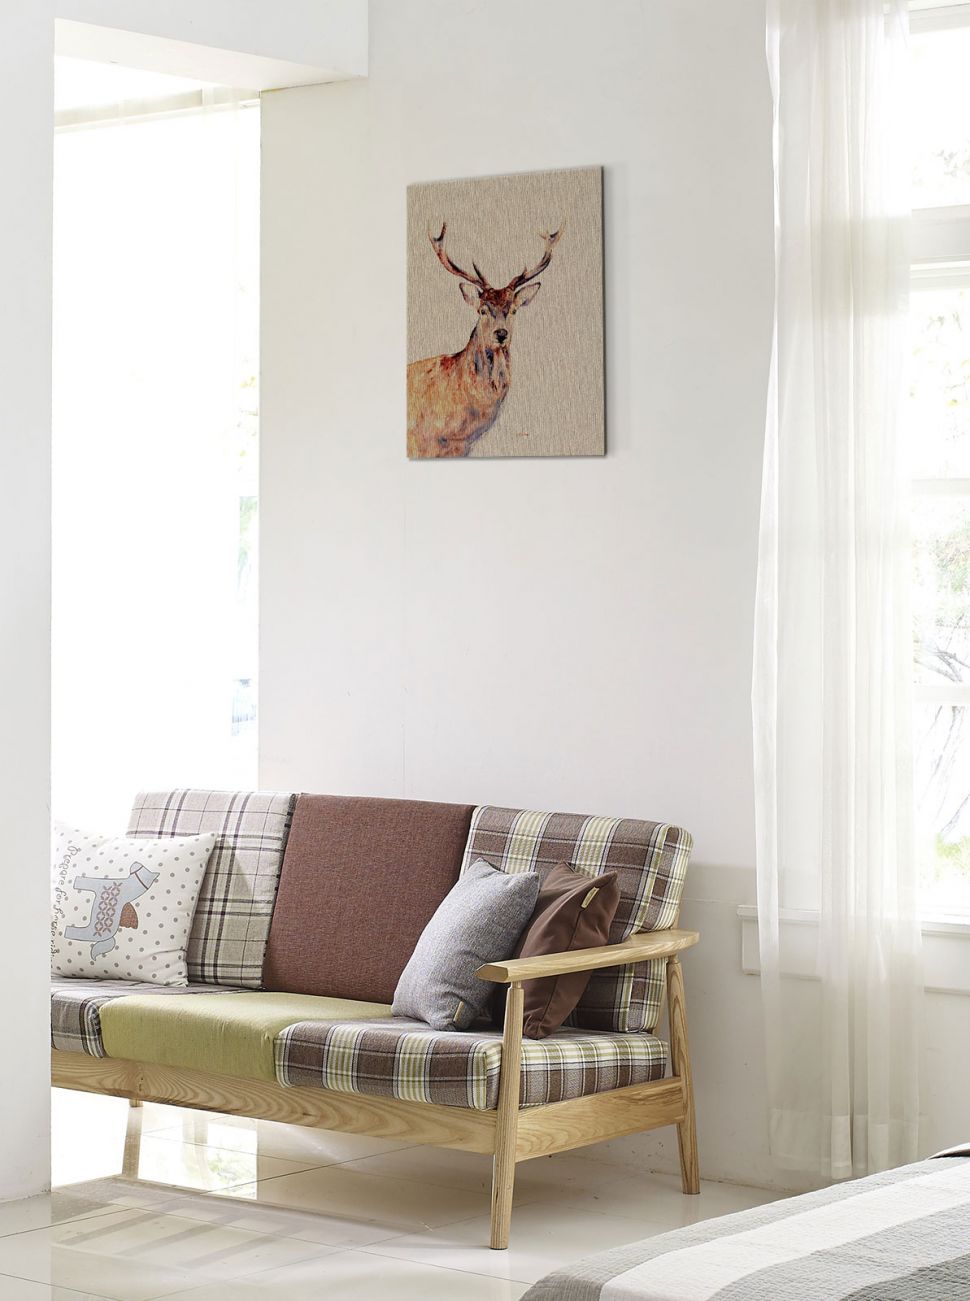 Canvas Montgomery przedstawiający jelenia wiszący nad kanapą na białej ścianie pomiędzy oknami